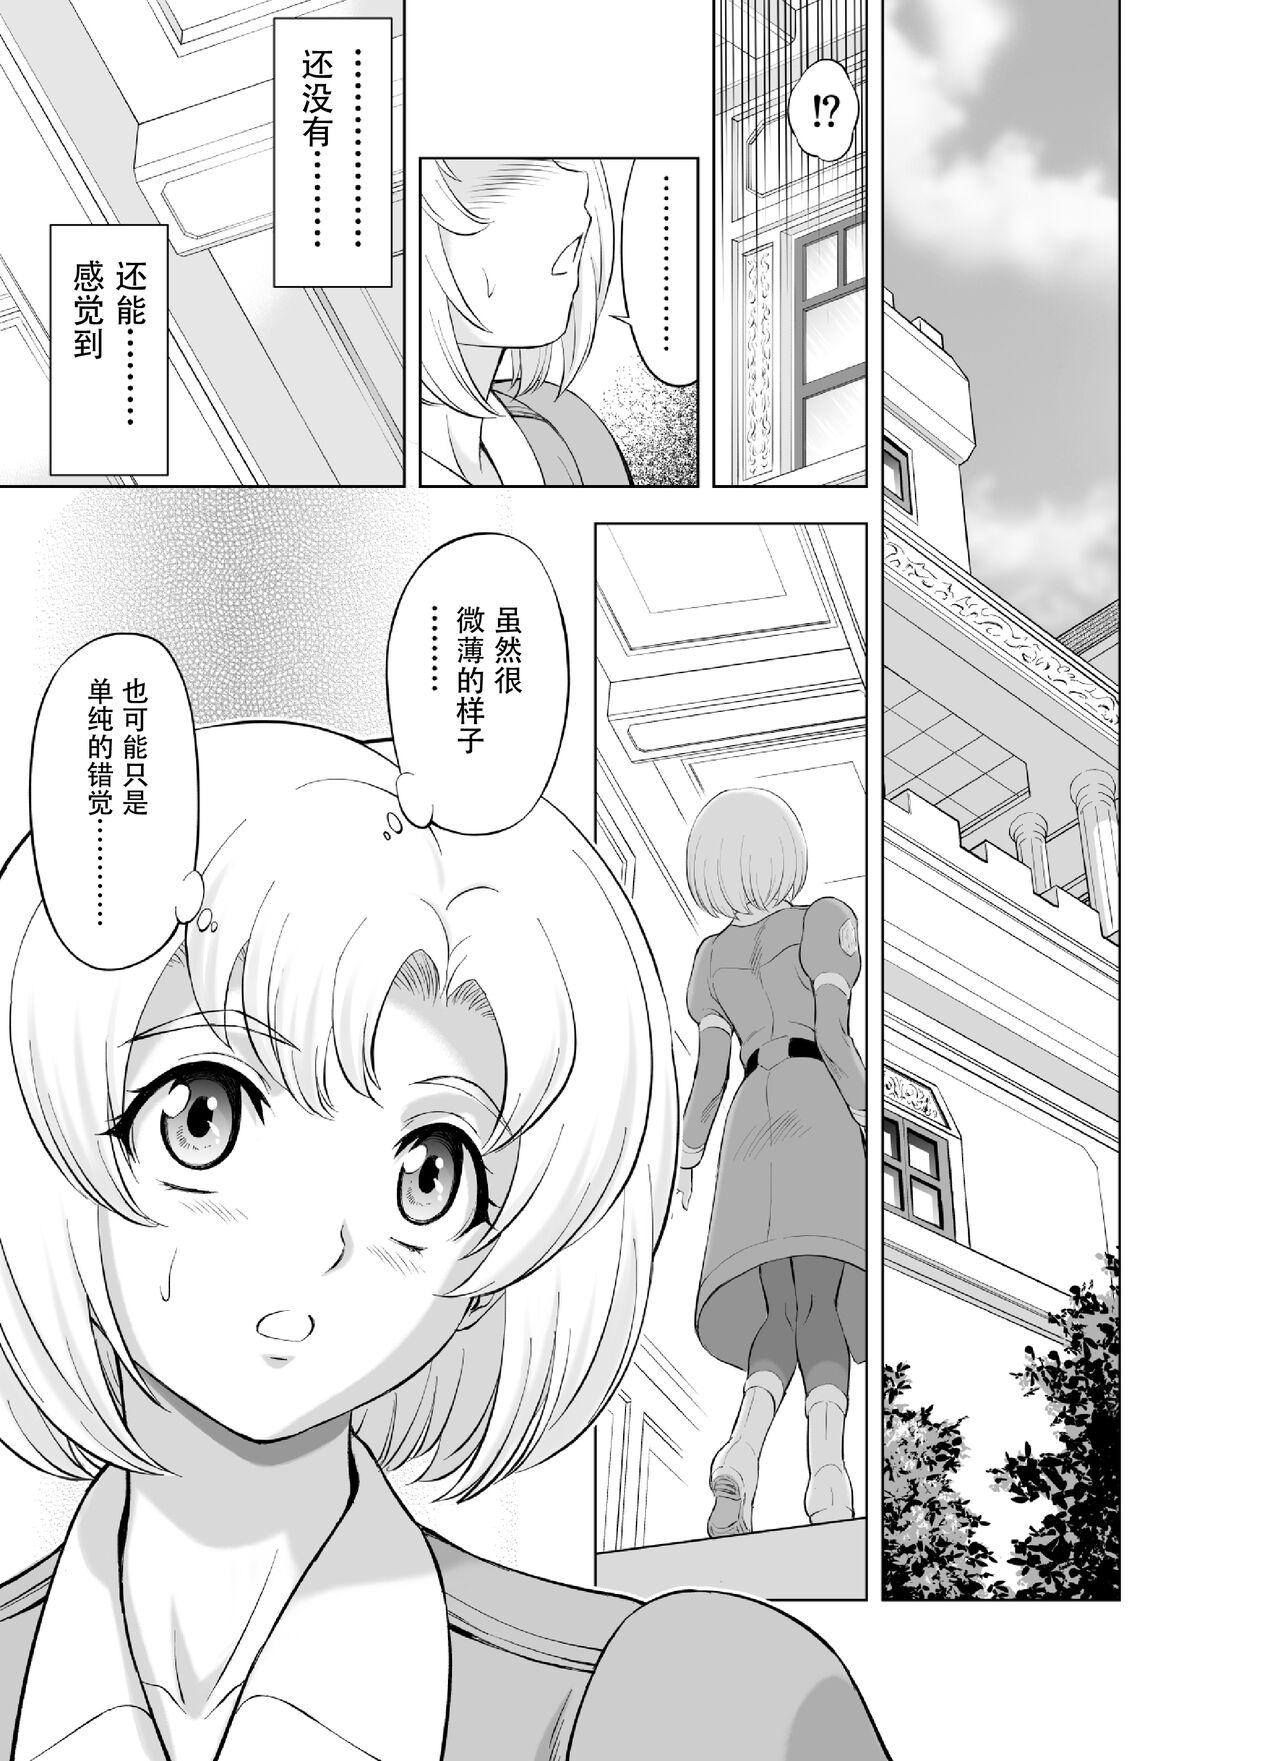 Cutie Reties no Michibiki Vol. 9 - Original Twerking - Page 1